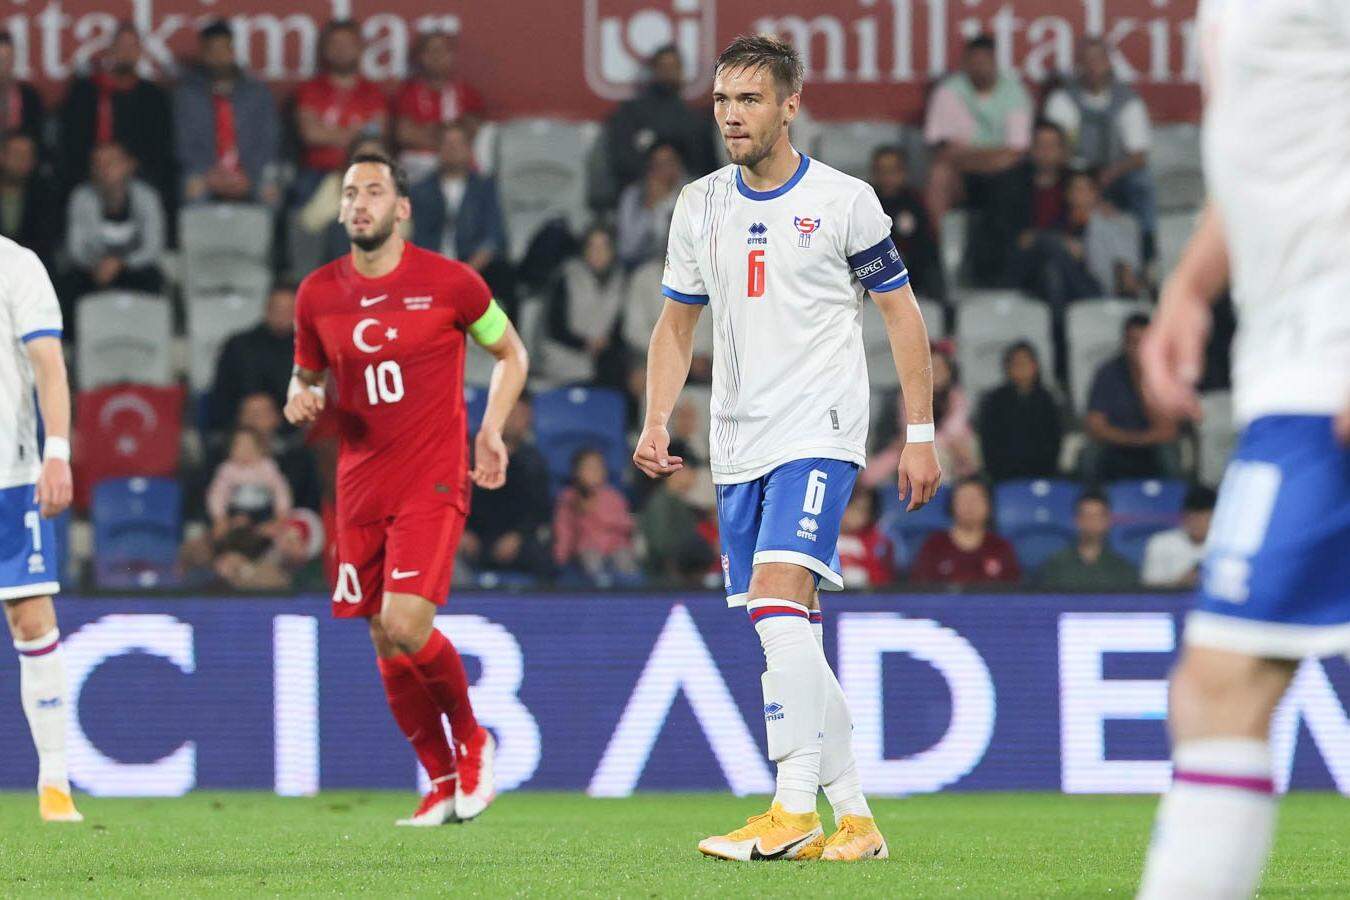 Faroe Football: Eliminatórias da Copa do Mundo de 2018: Ilhas Faroe no grupo  de Portugal e Suíça